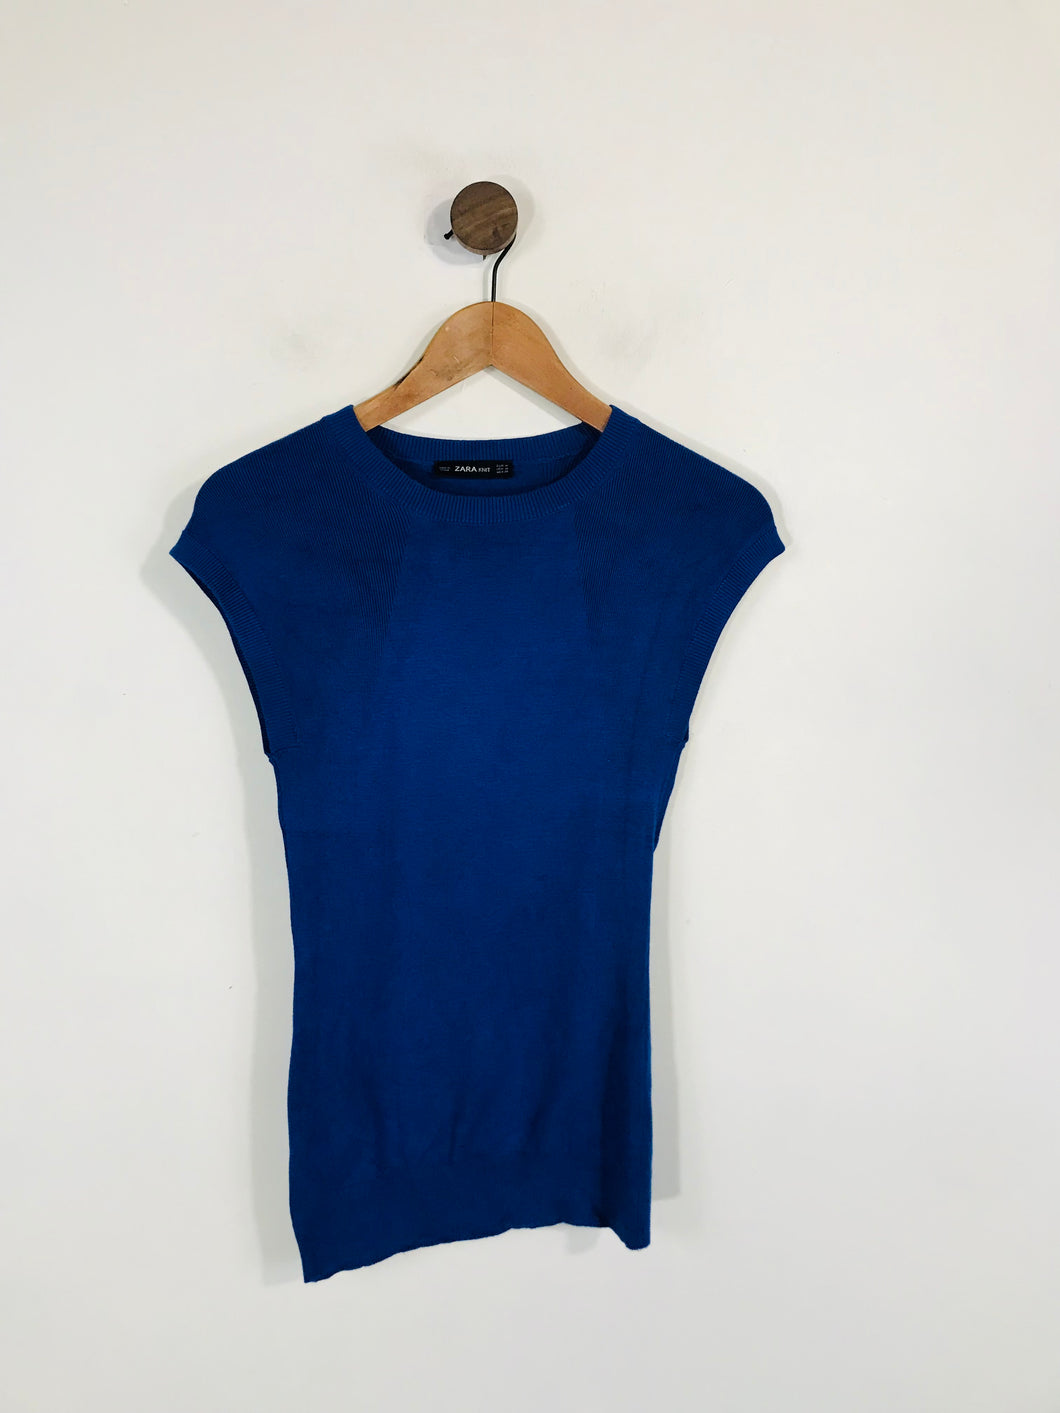 Zara Women's Knit Tank Top | M UK10-12 | Blue